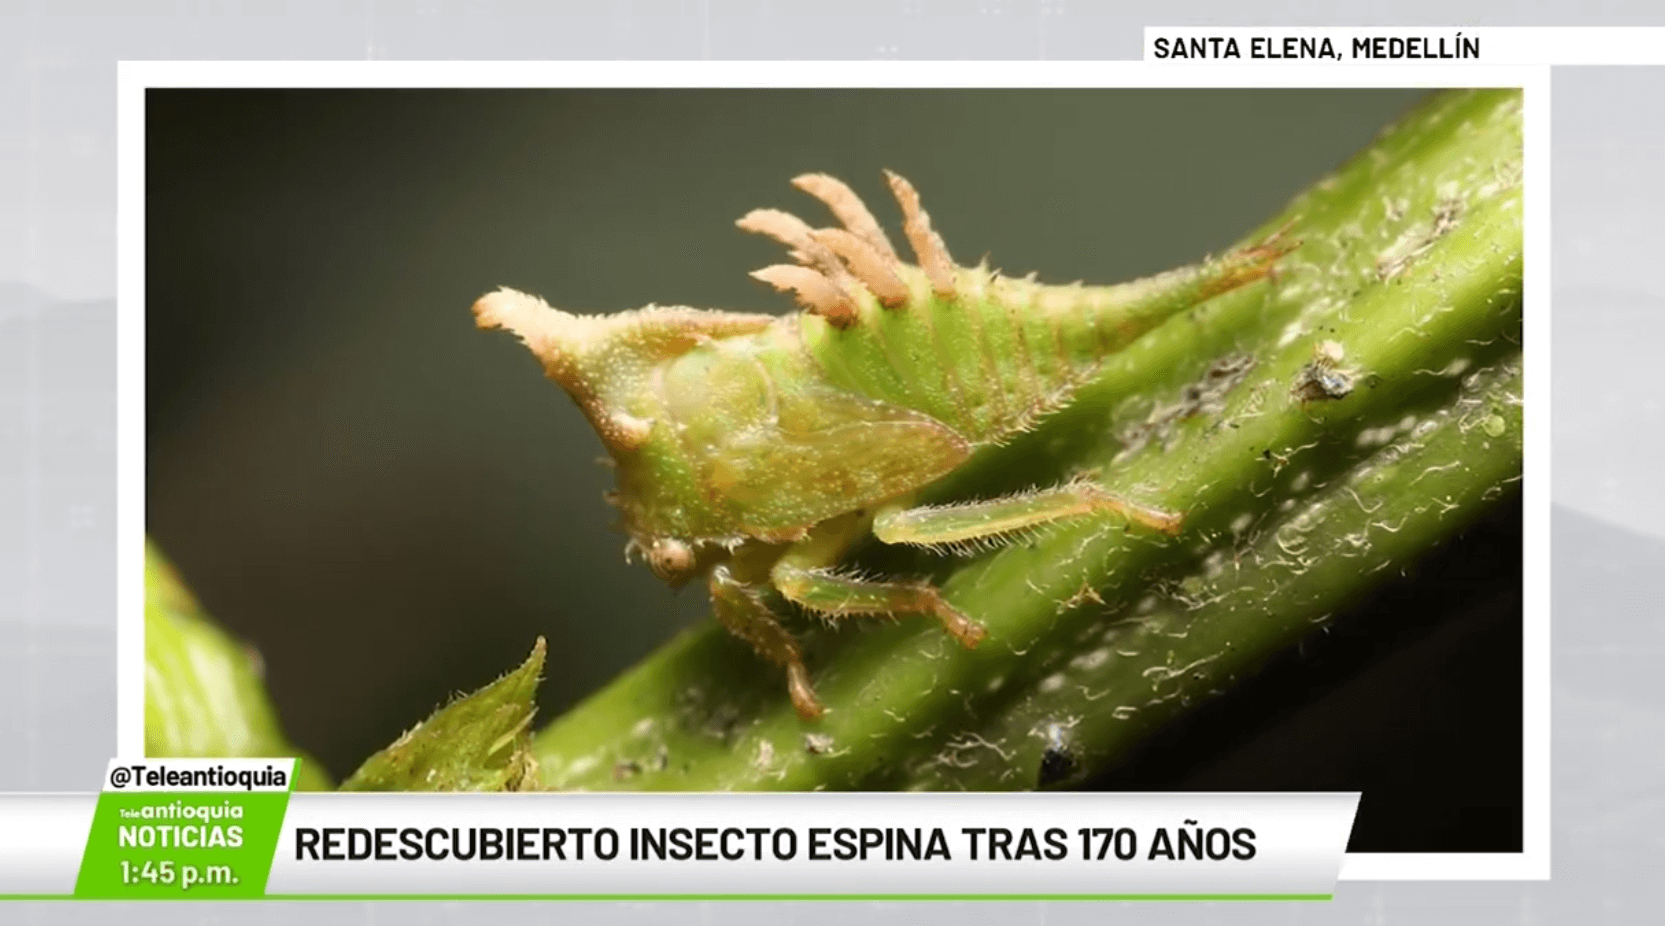 Redescubierto insecto espina tras 170 años